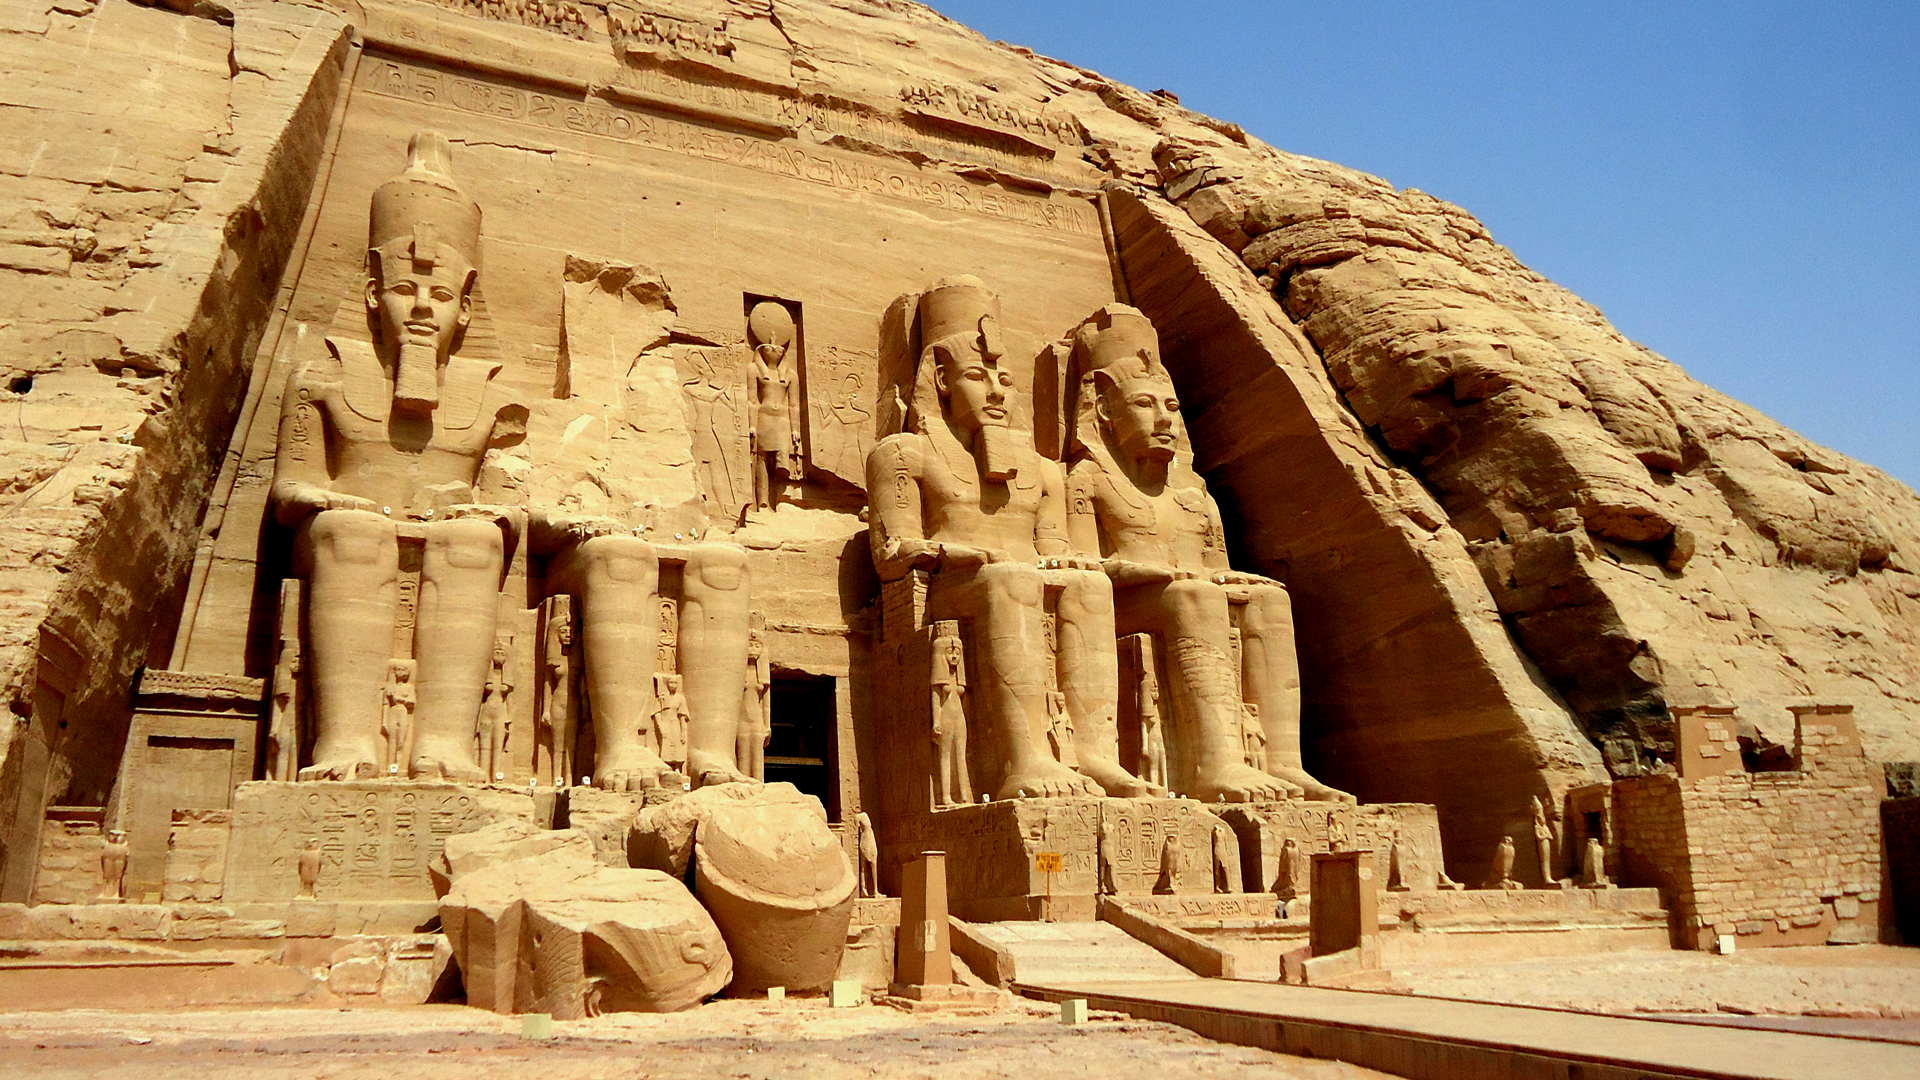 Le grand temple d'Abou Simbel